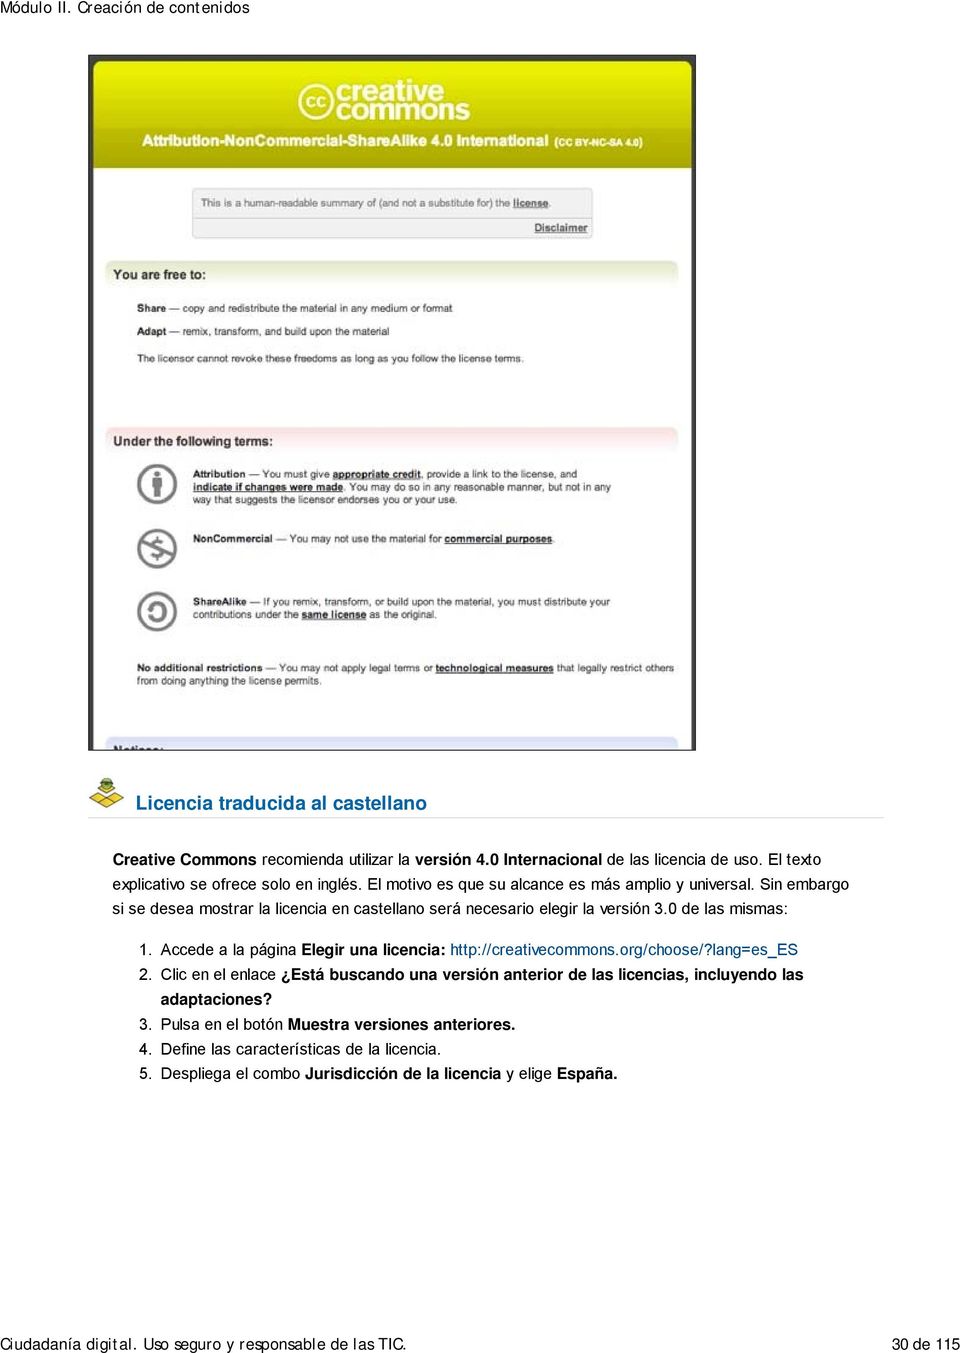 Sin embargo si se desea mostrar la licencia en castellano será necesario elegir la versión 3.0 de las mismas: 1. 2. 3. 4. 5. Accede a la página Elegir una licencia: http://creativecommons.